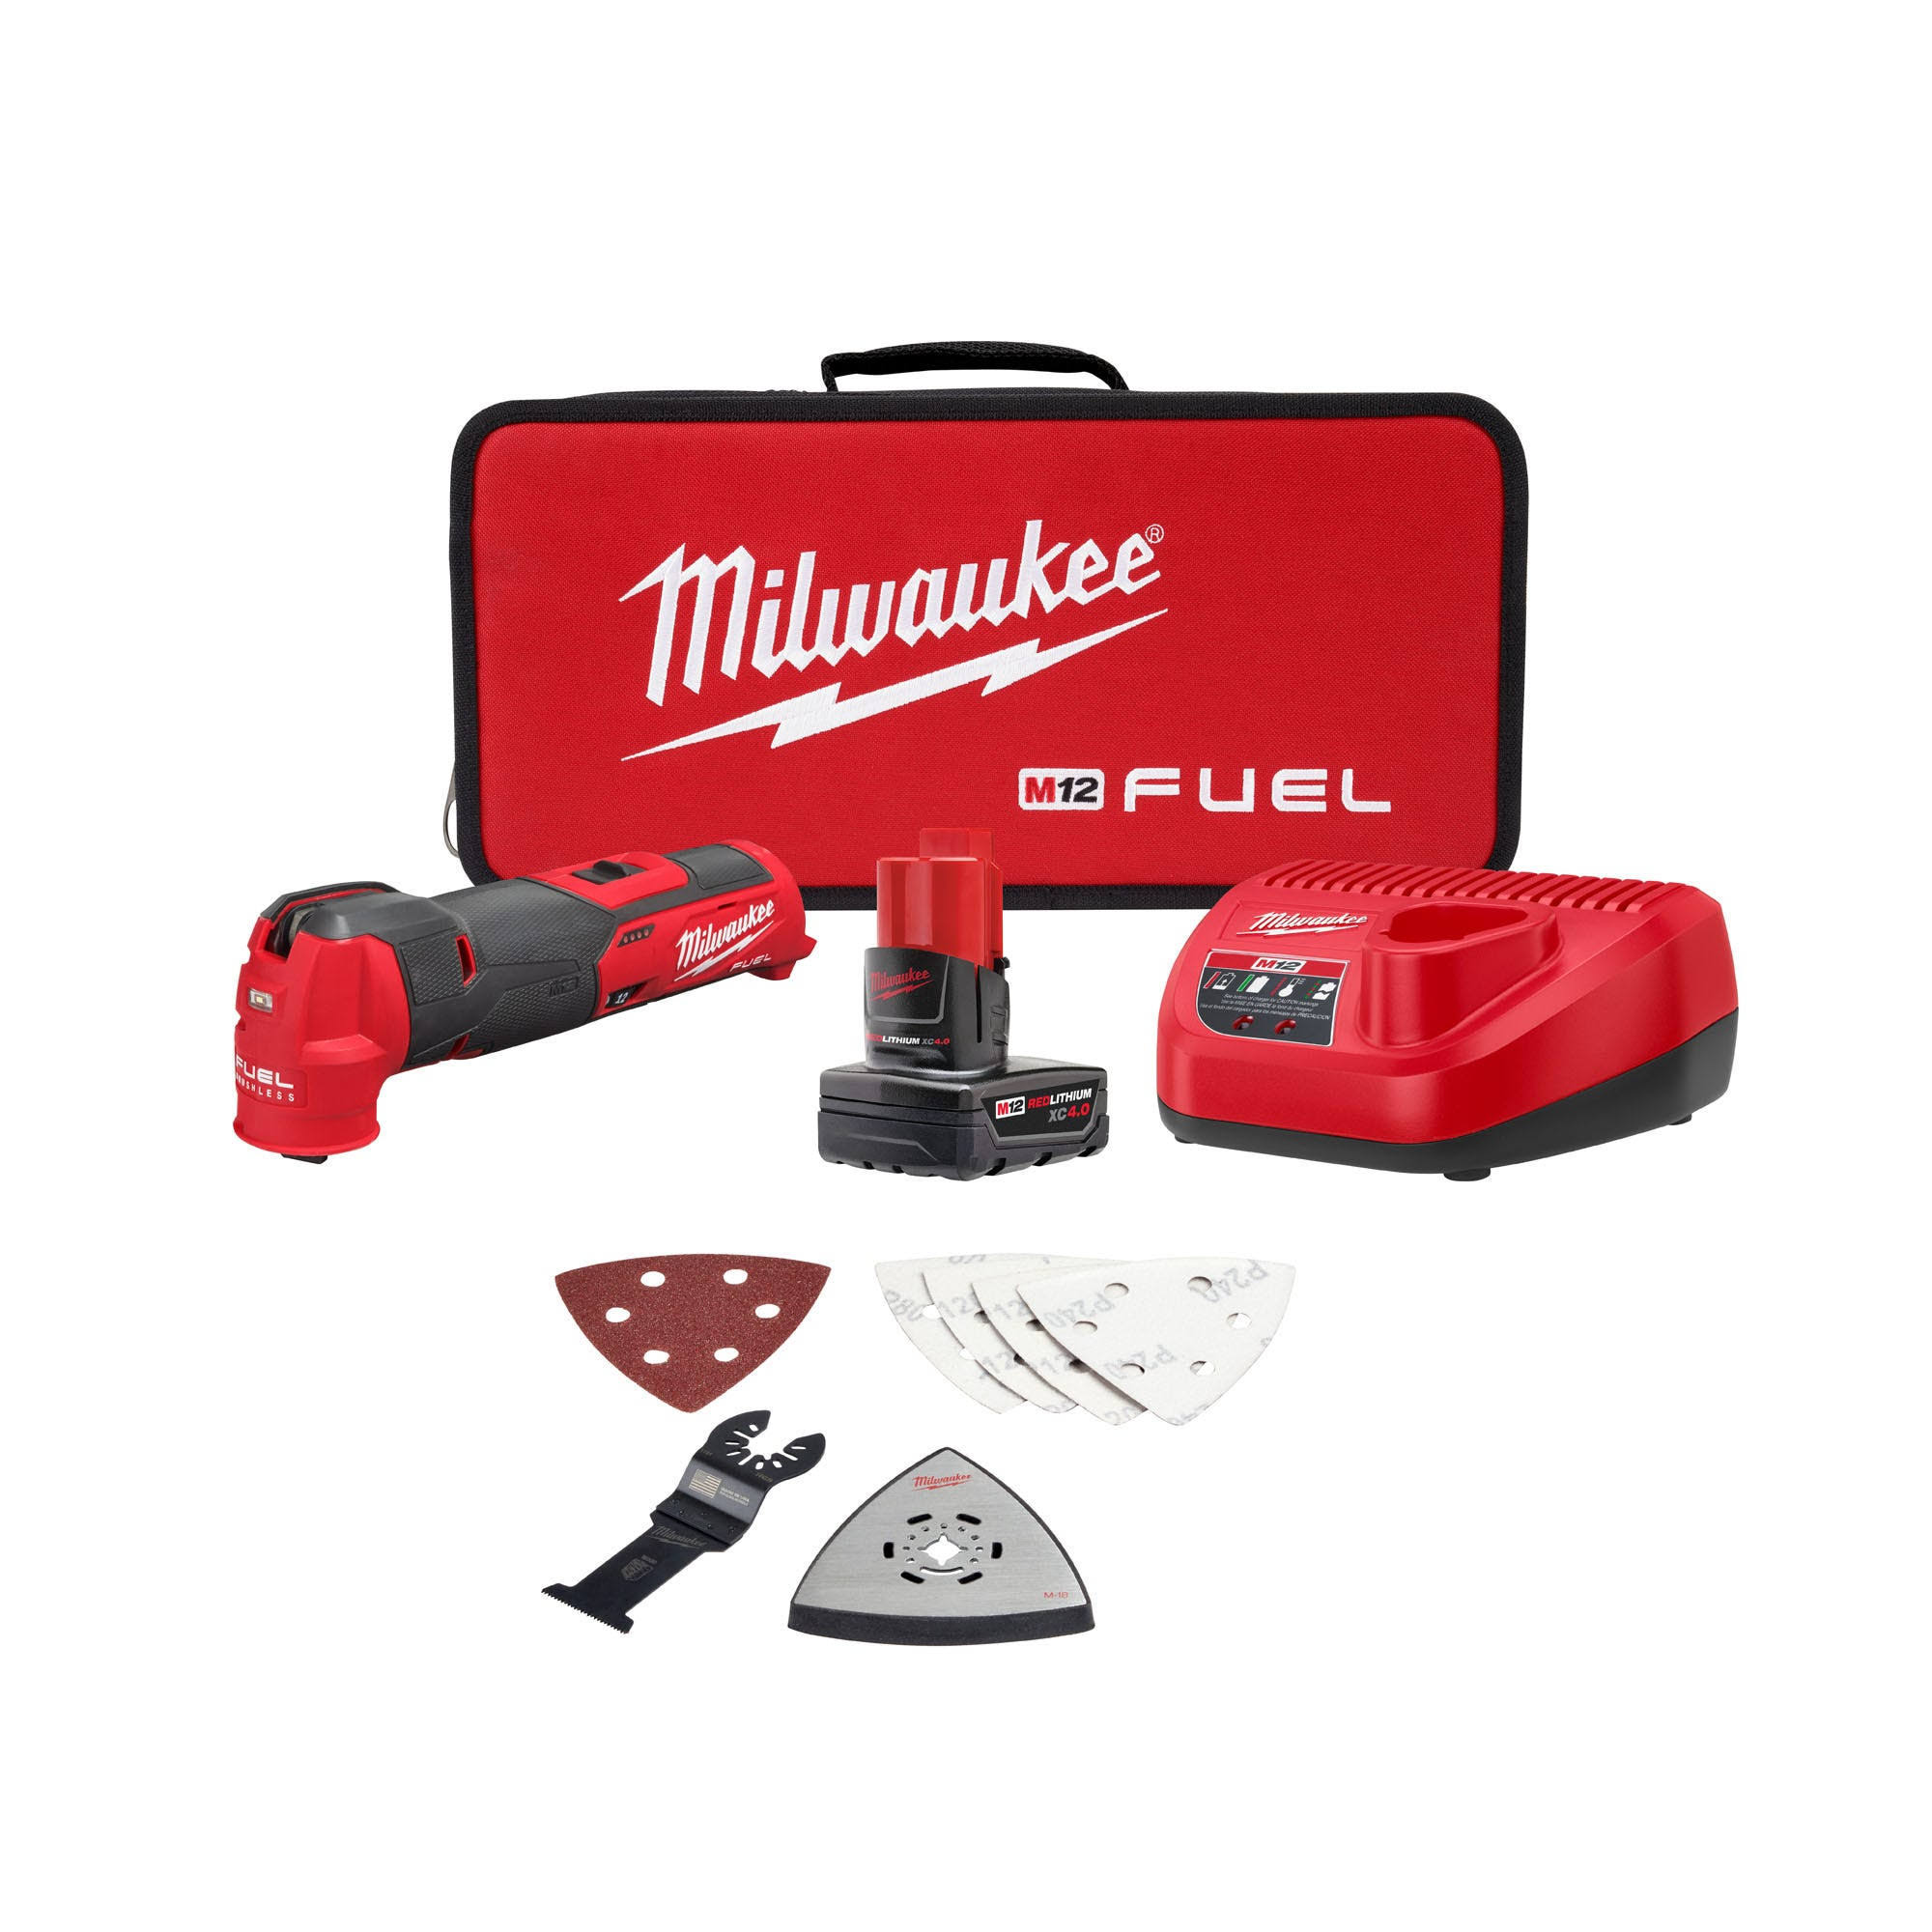 Milwaukee 2526-21XC M12 Fuel Oscillating Multi Tool Kit